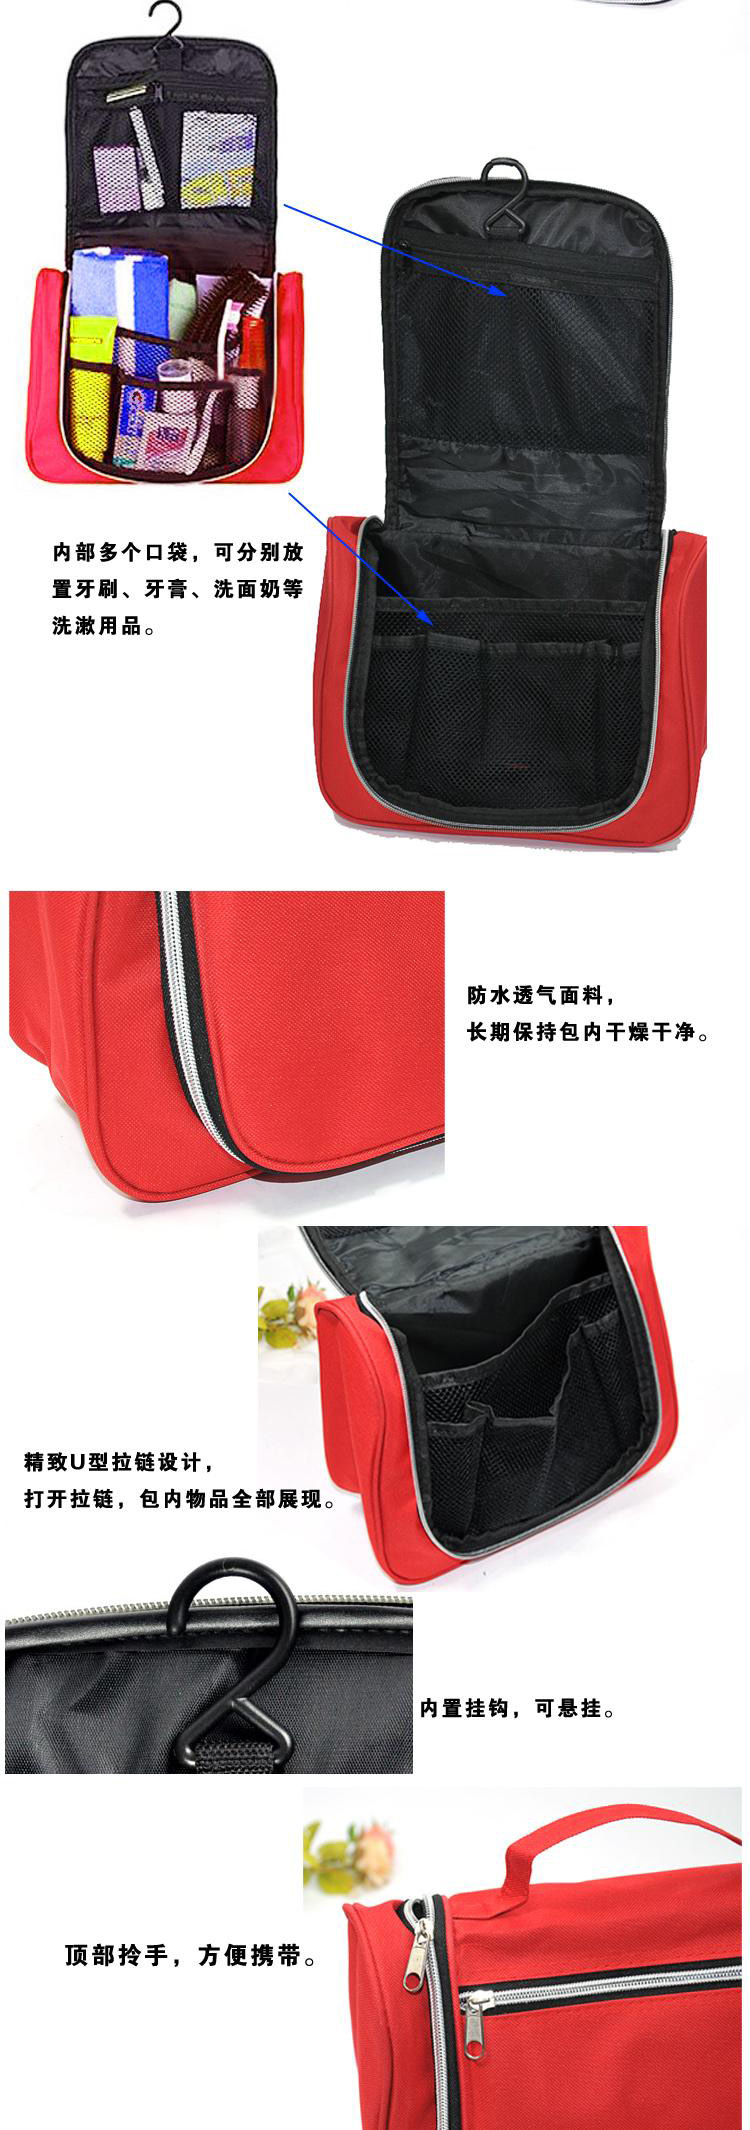 普润 韩国包中包 双拉链收纳包 包中包收纳整理袋 创意化妆包 大号洗漱包 红色